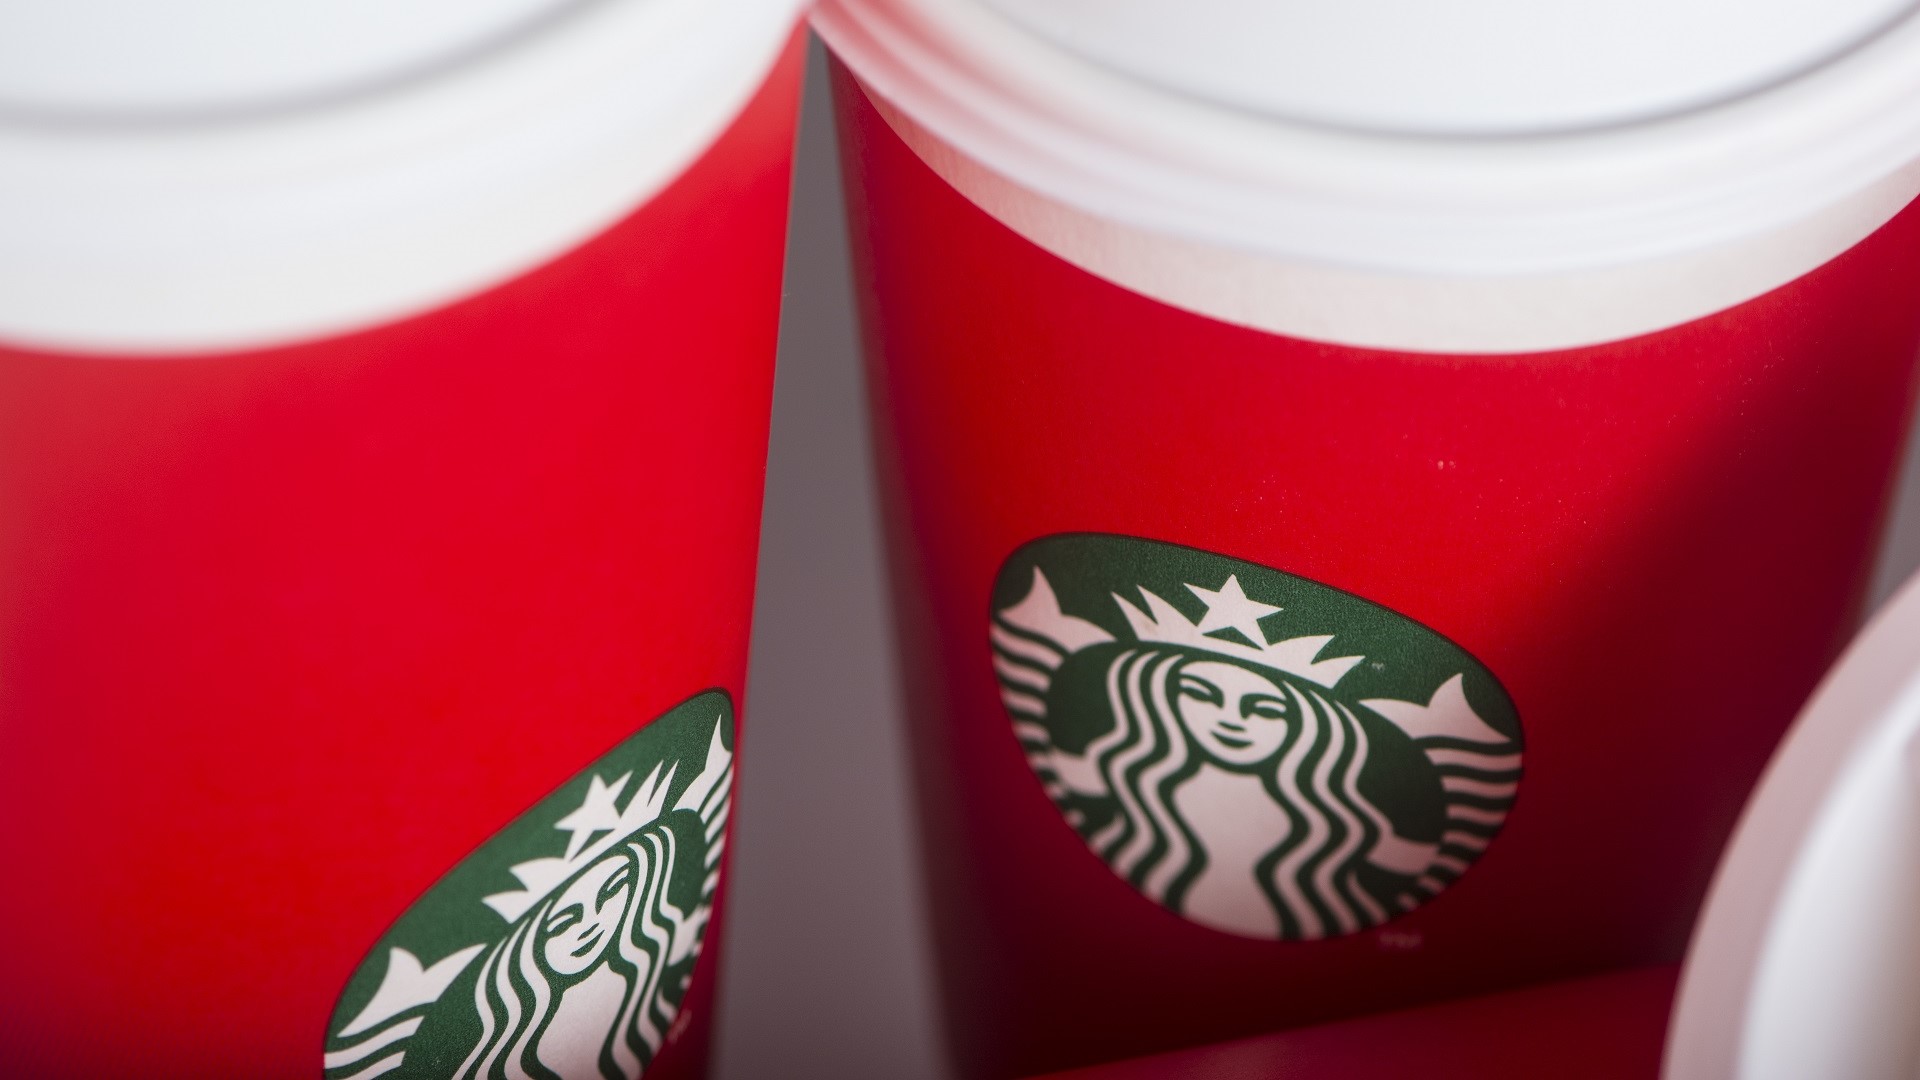 lodret nyse Hverdage Deal Alert: Starbucks Offering Free Reusable Red Cups on November 18 Only |  GOBankingRates